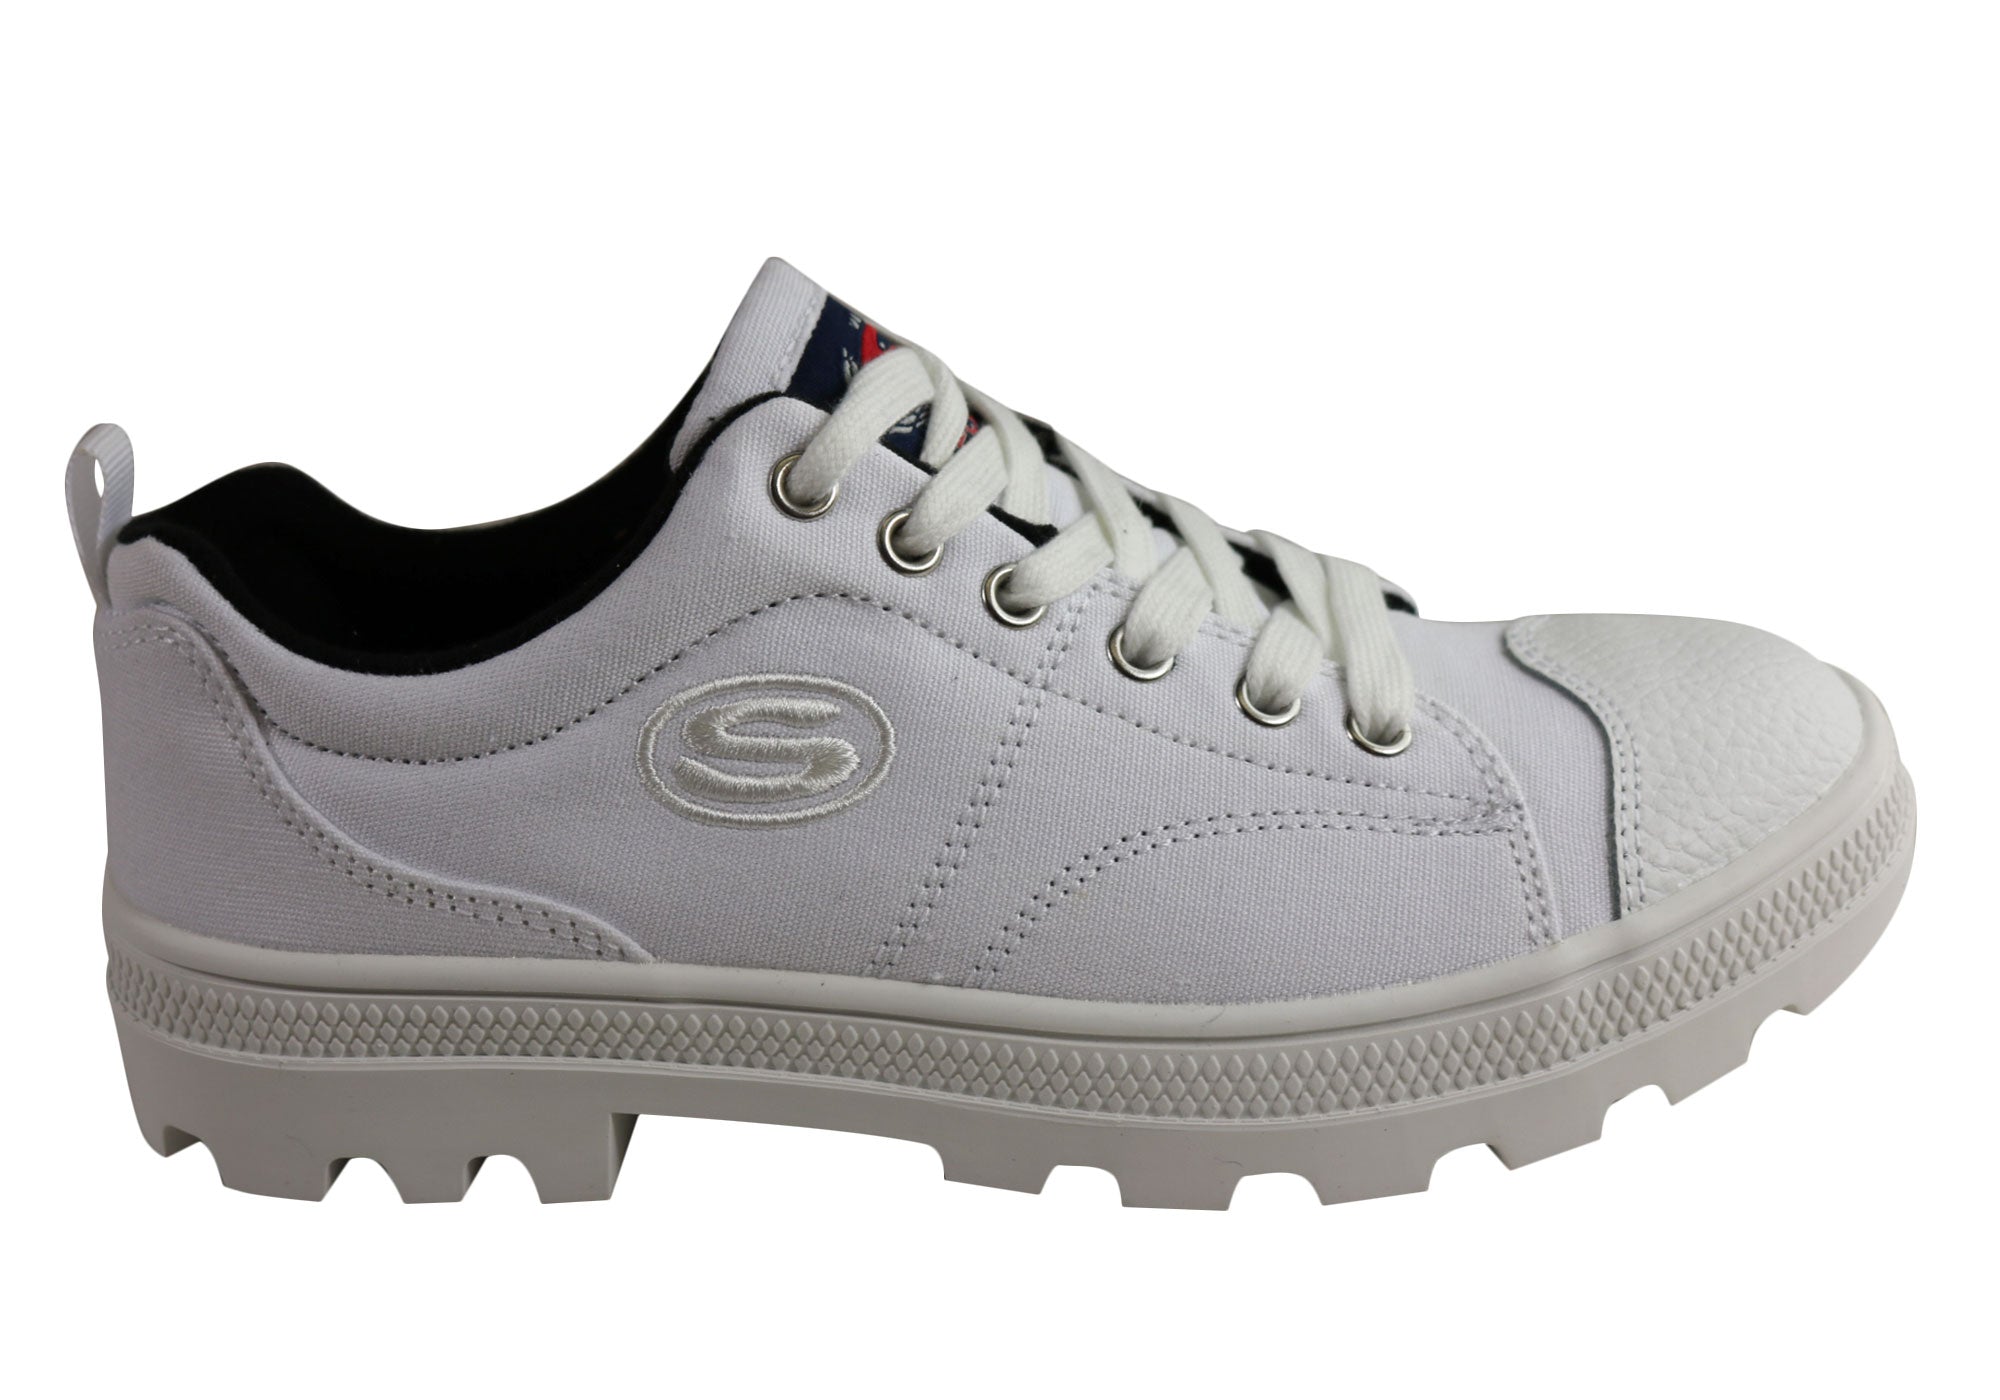 skechers memory foam white sneakers